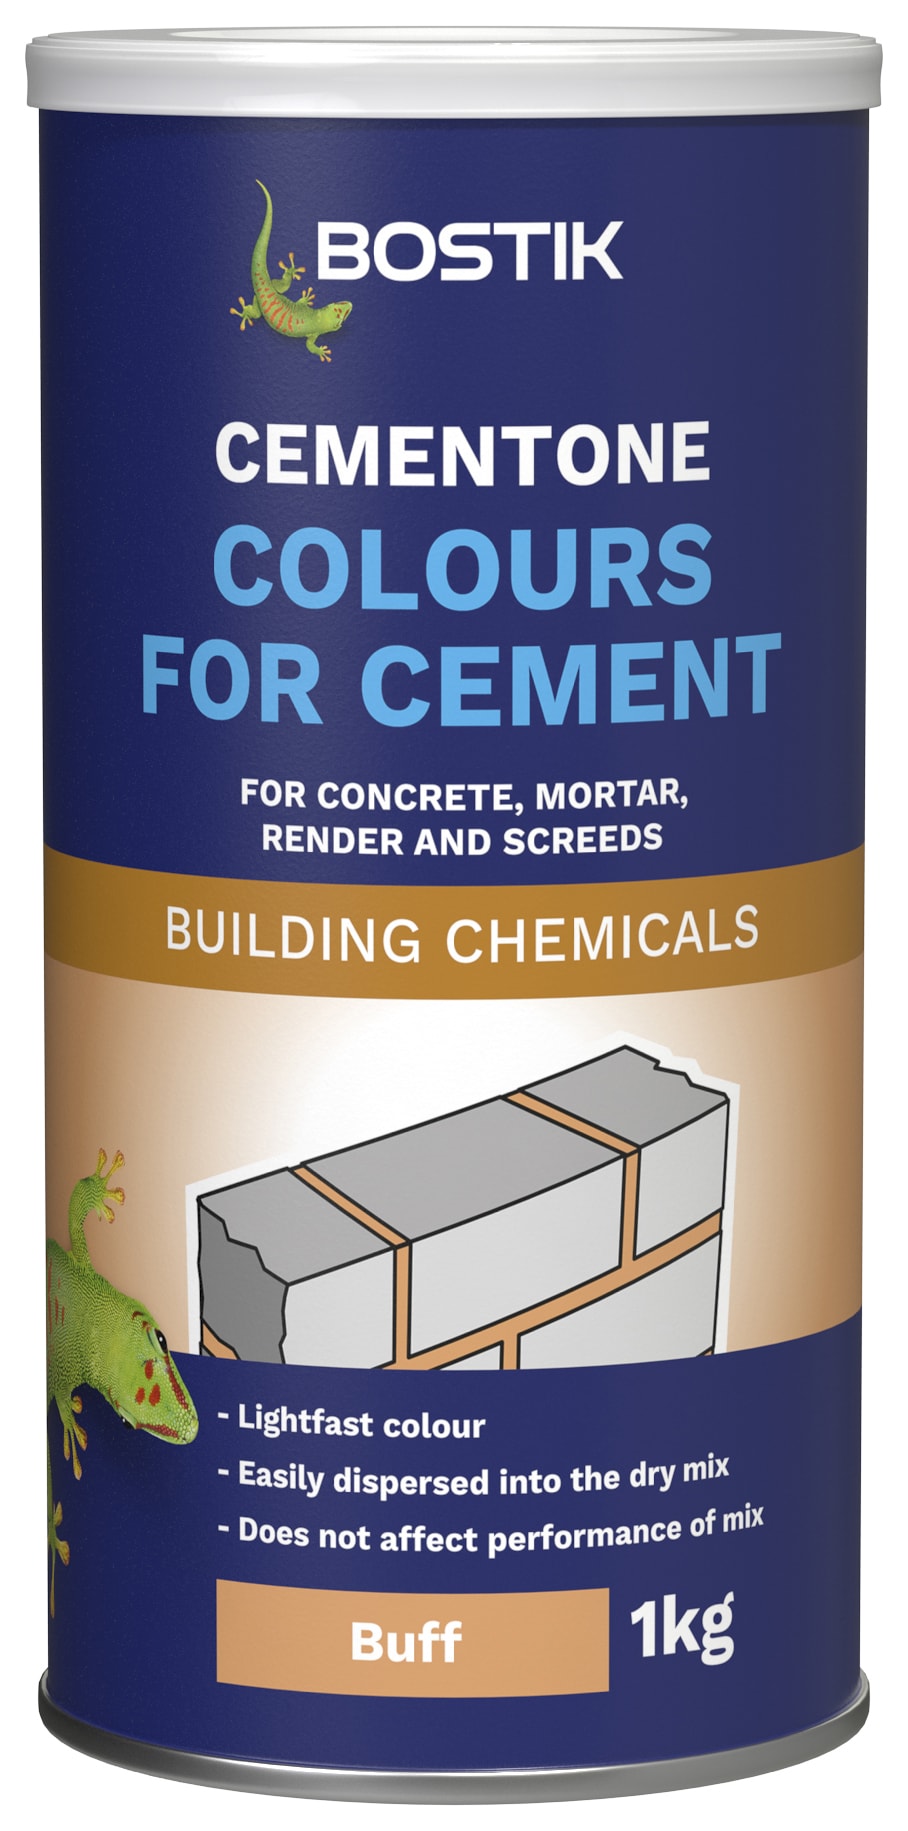 Bostik 1kg Cementone Colours for Cement - Buff